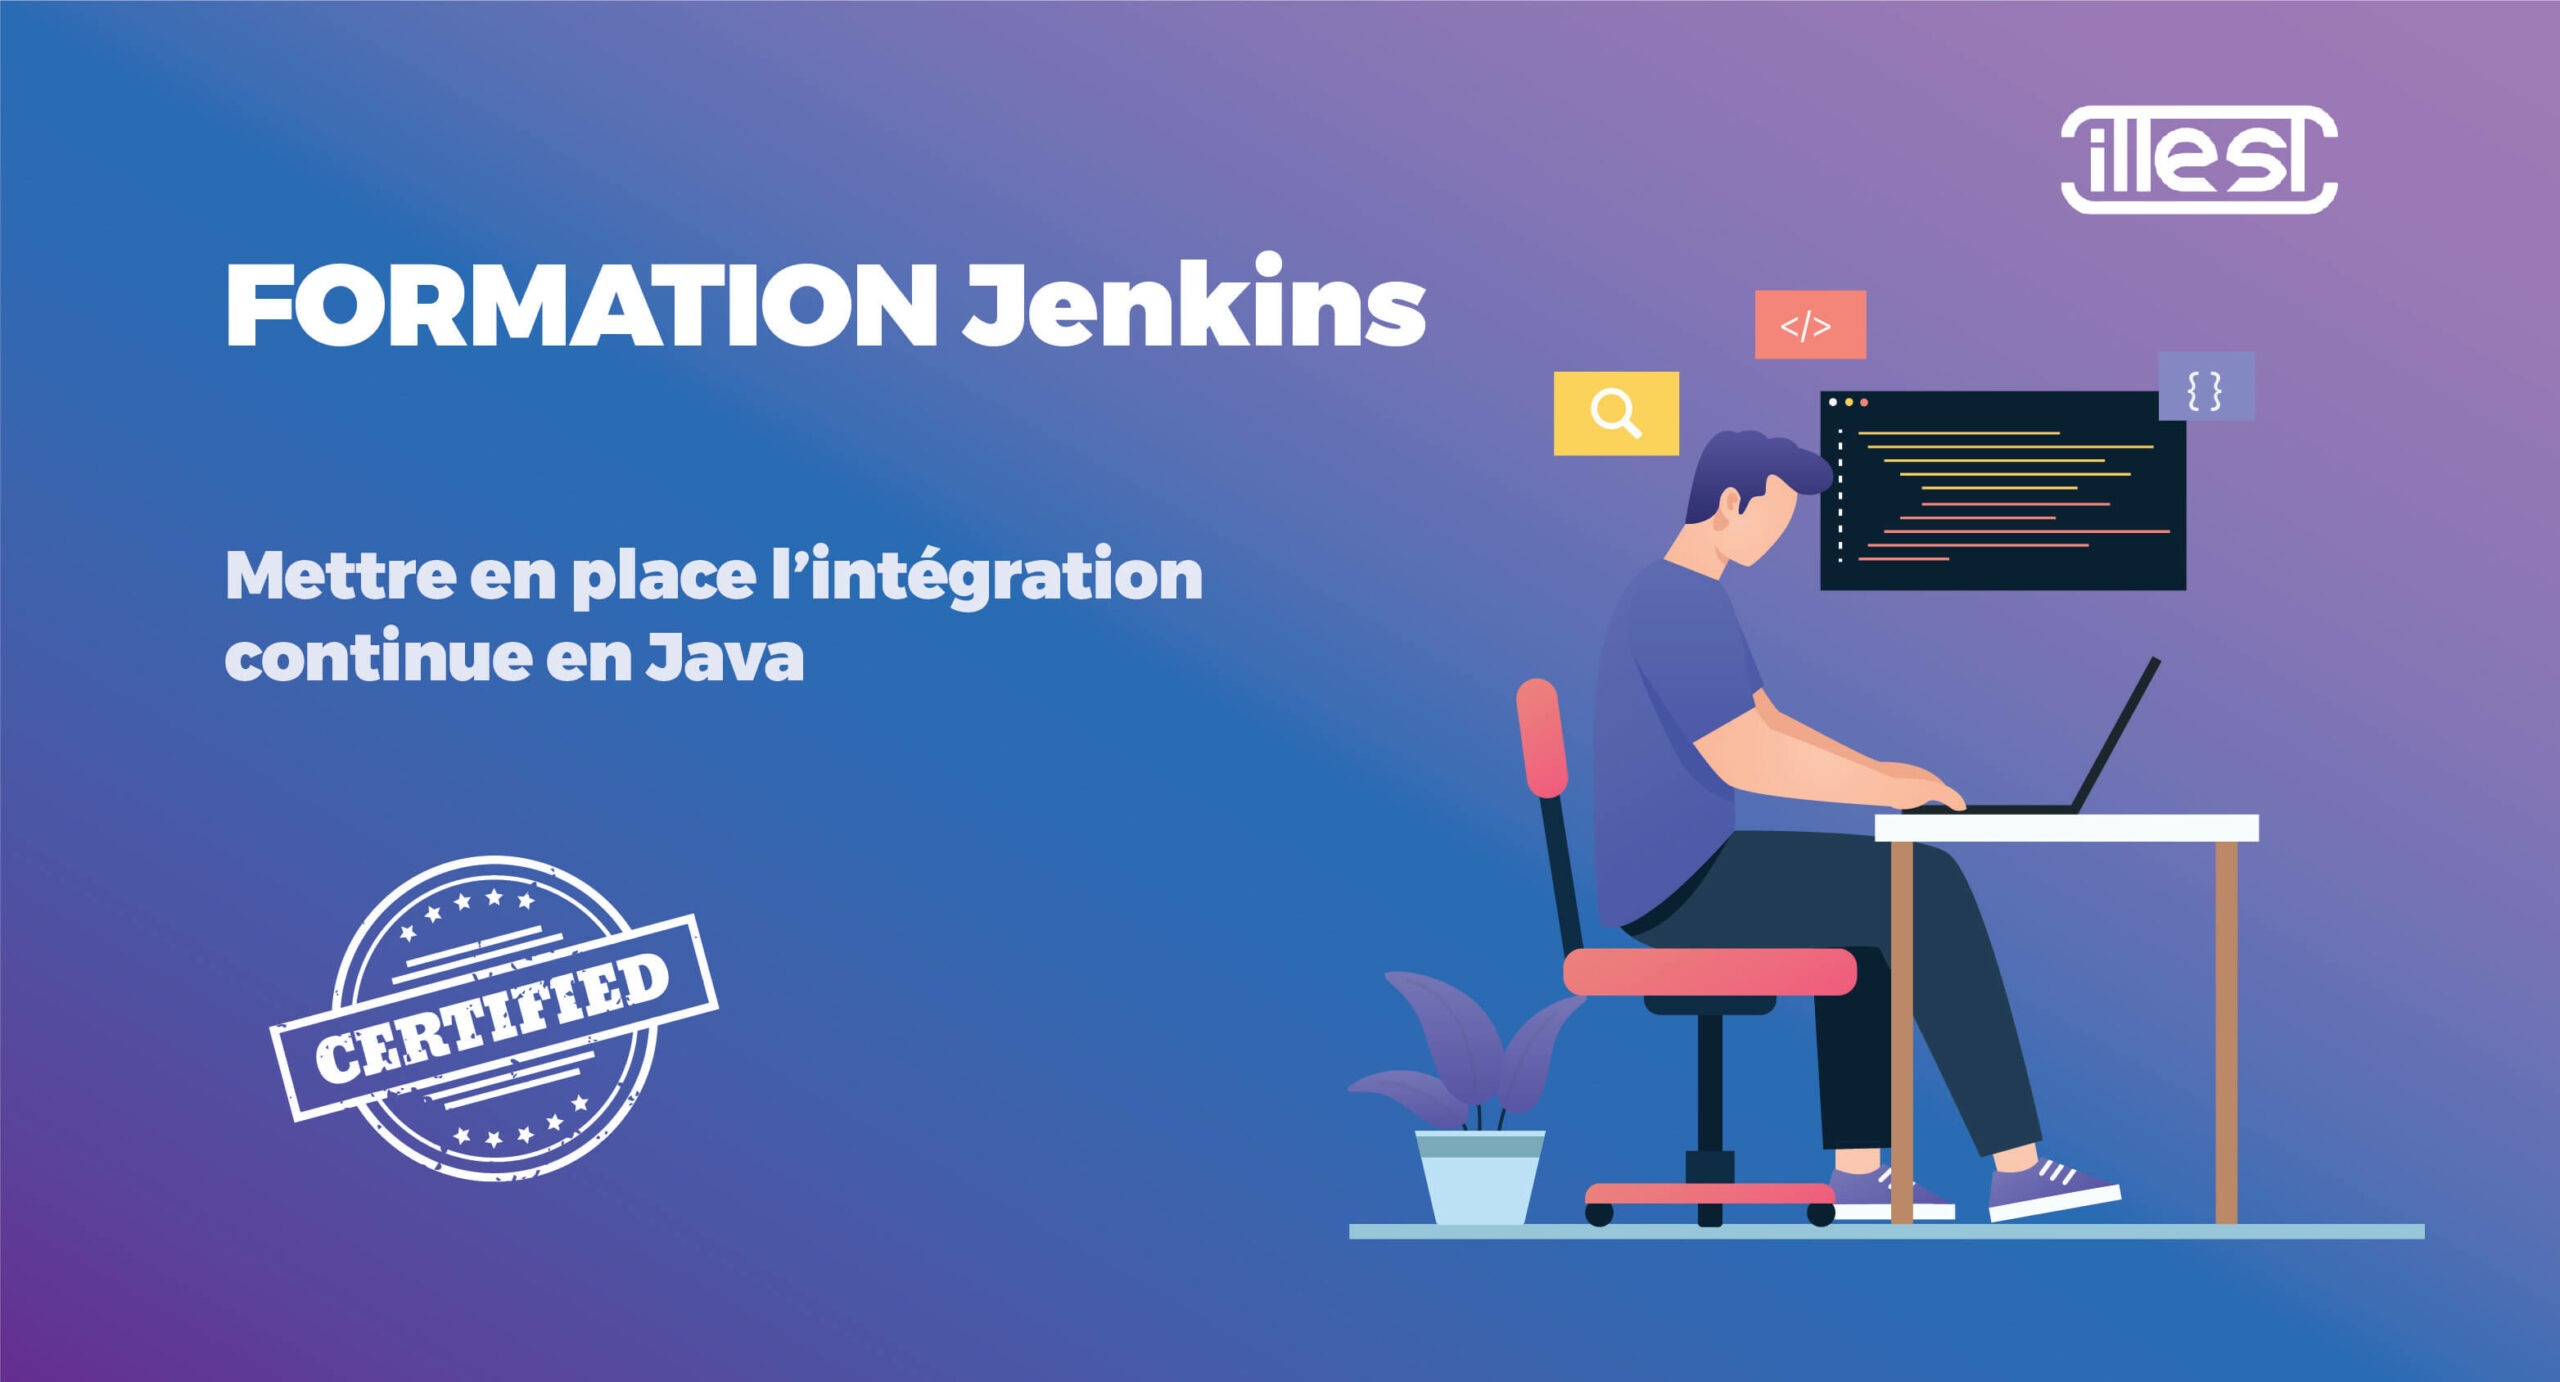 Formation Jenkins, mettre en place l’intégration continue en Java